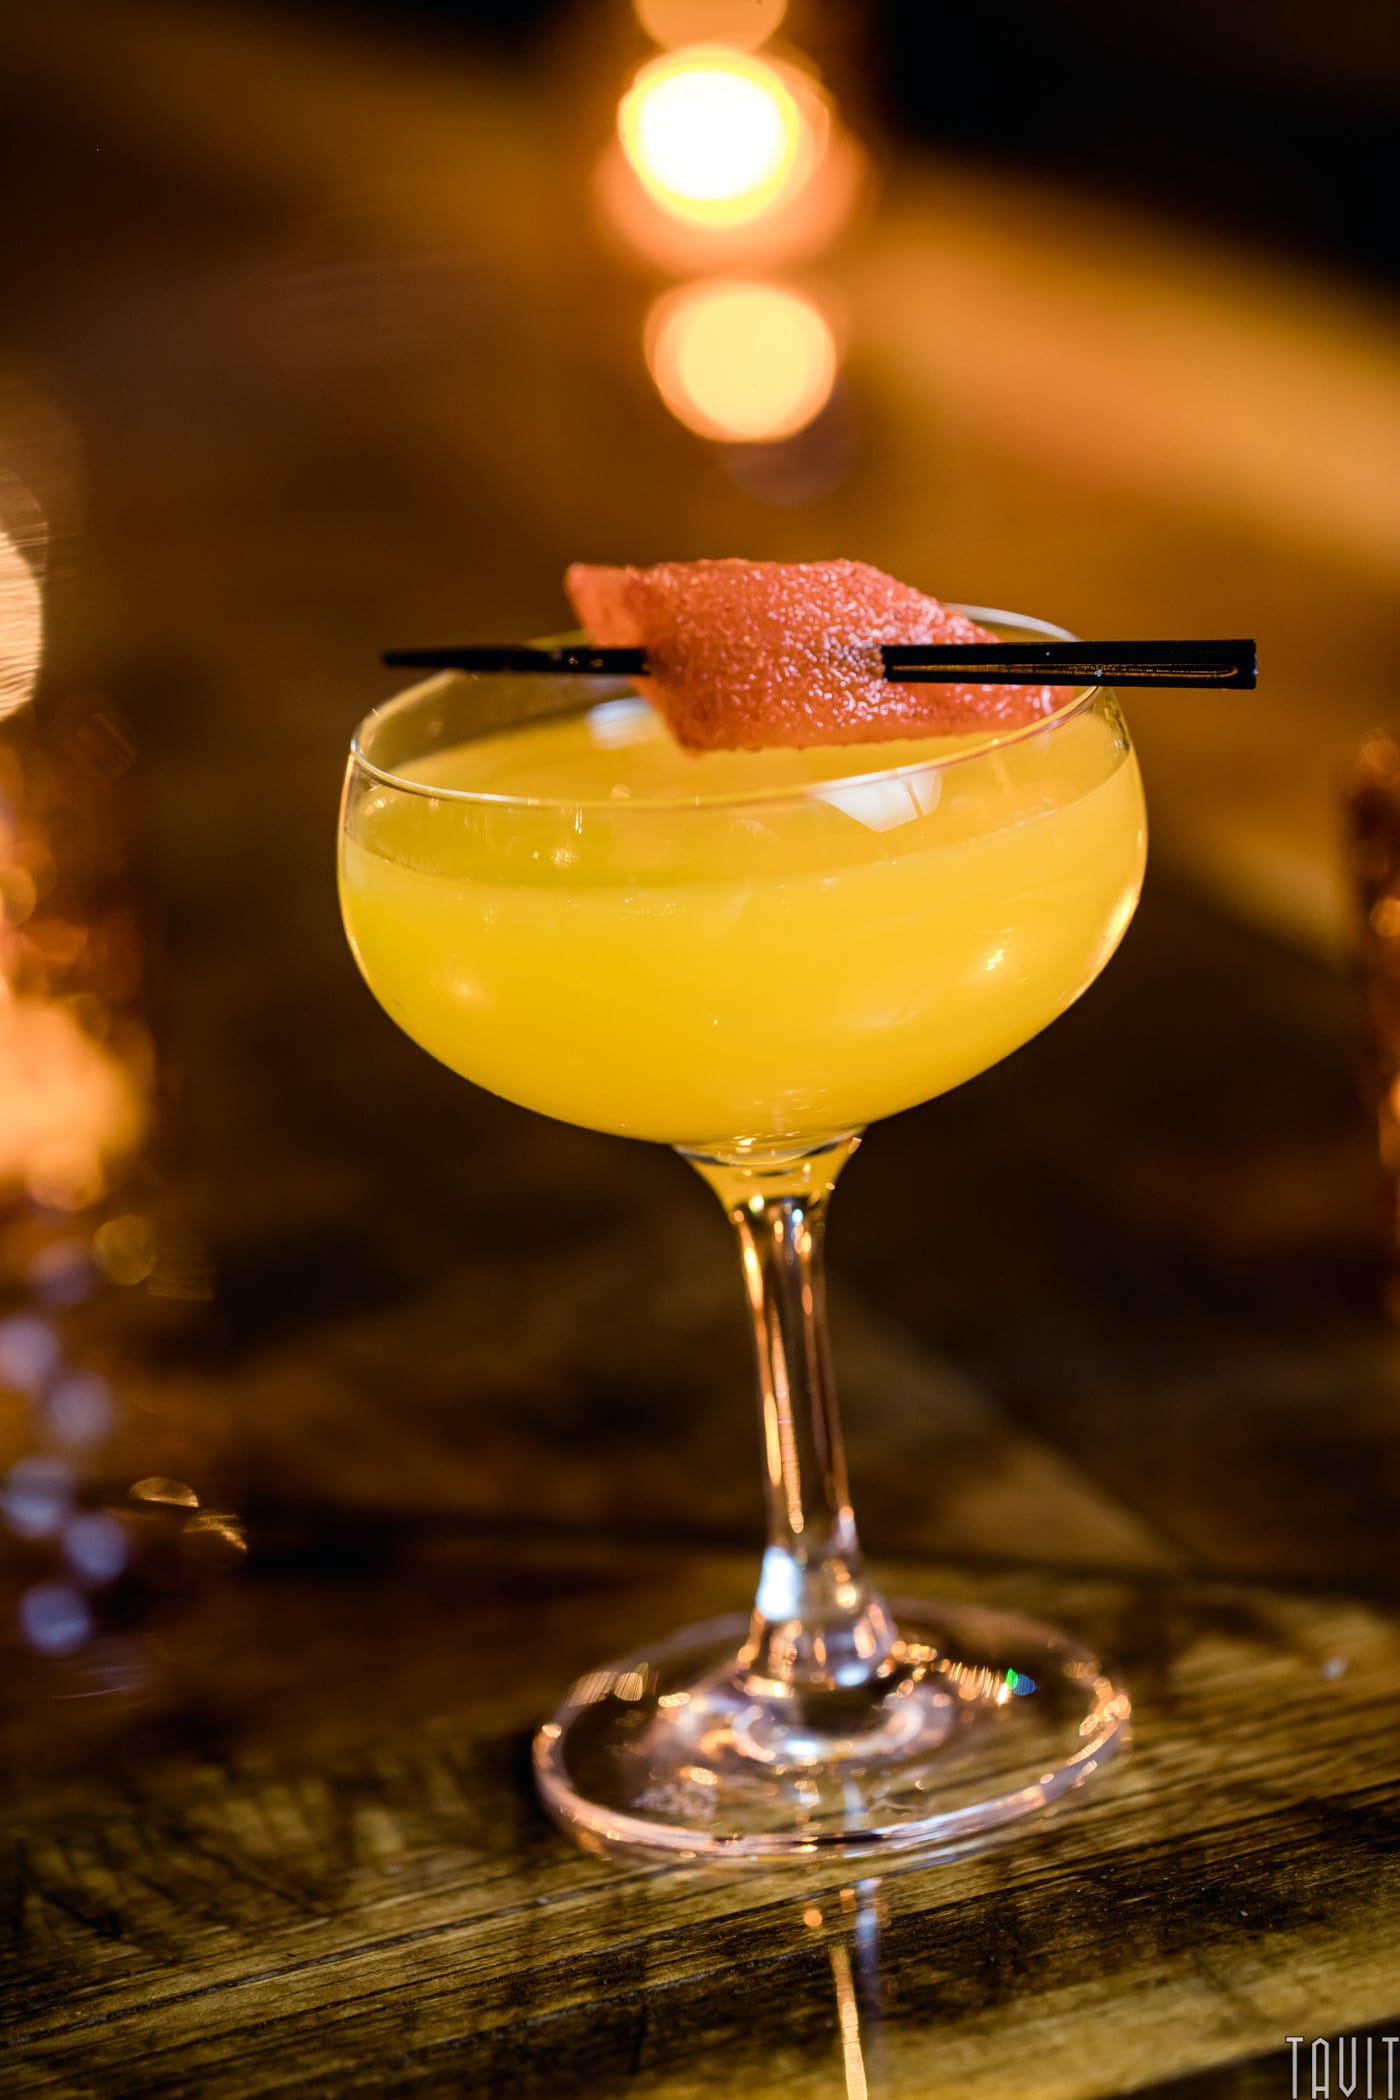 Orange cocktail with garnish